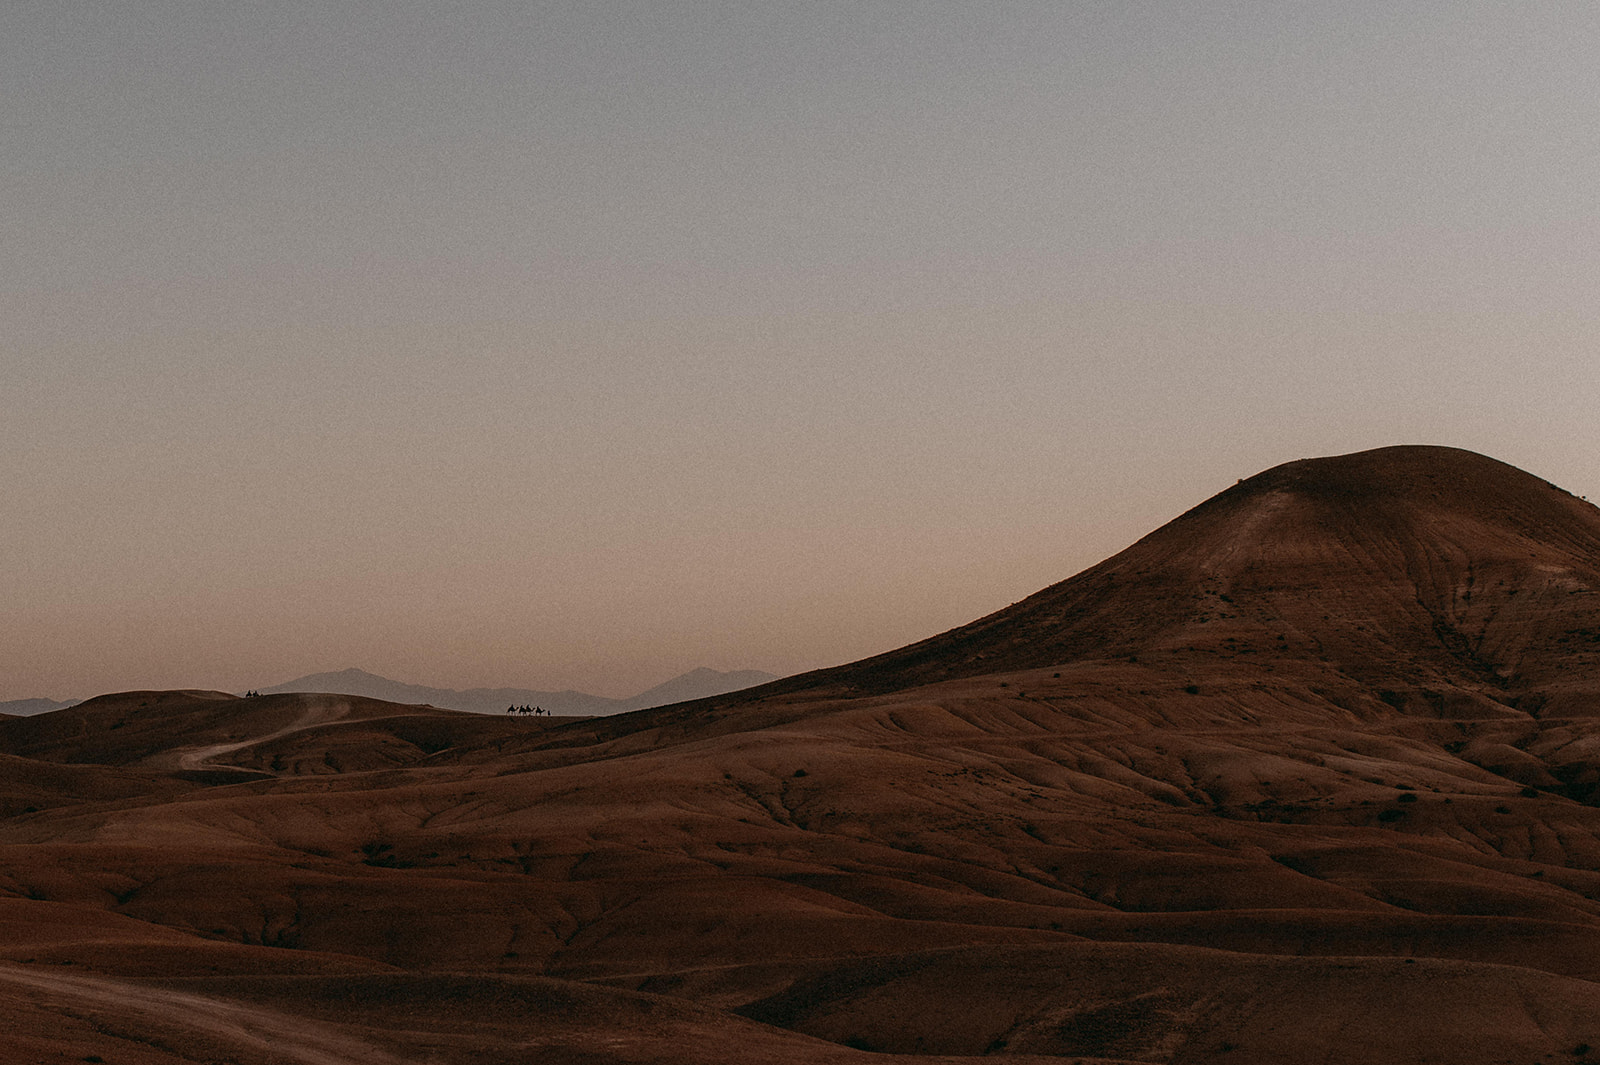 Les dunes du désert d'Agafay, près de Marrakech au Maroc, lors du coucher du soleil